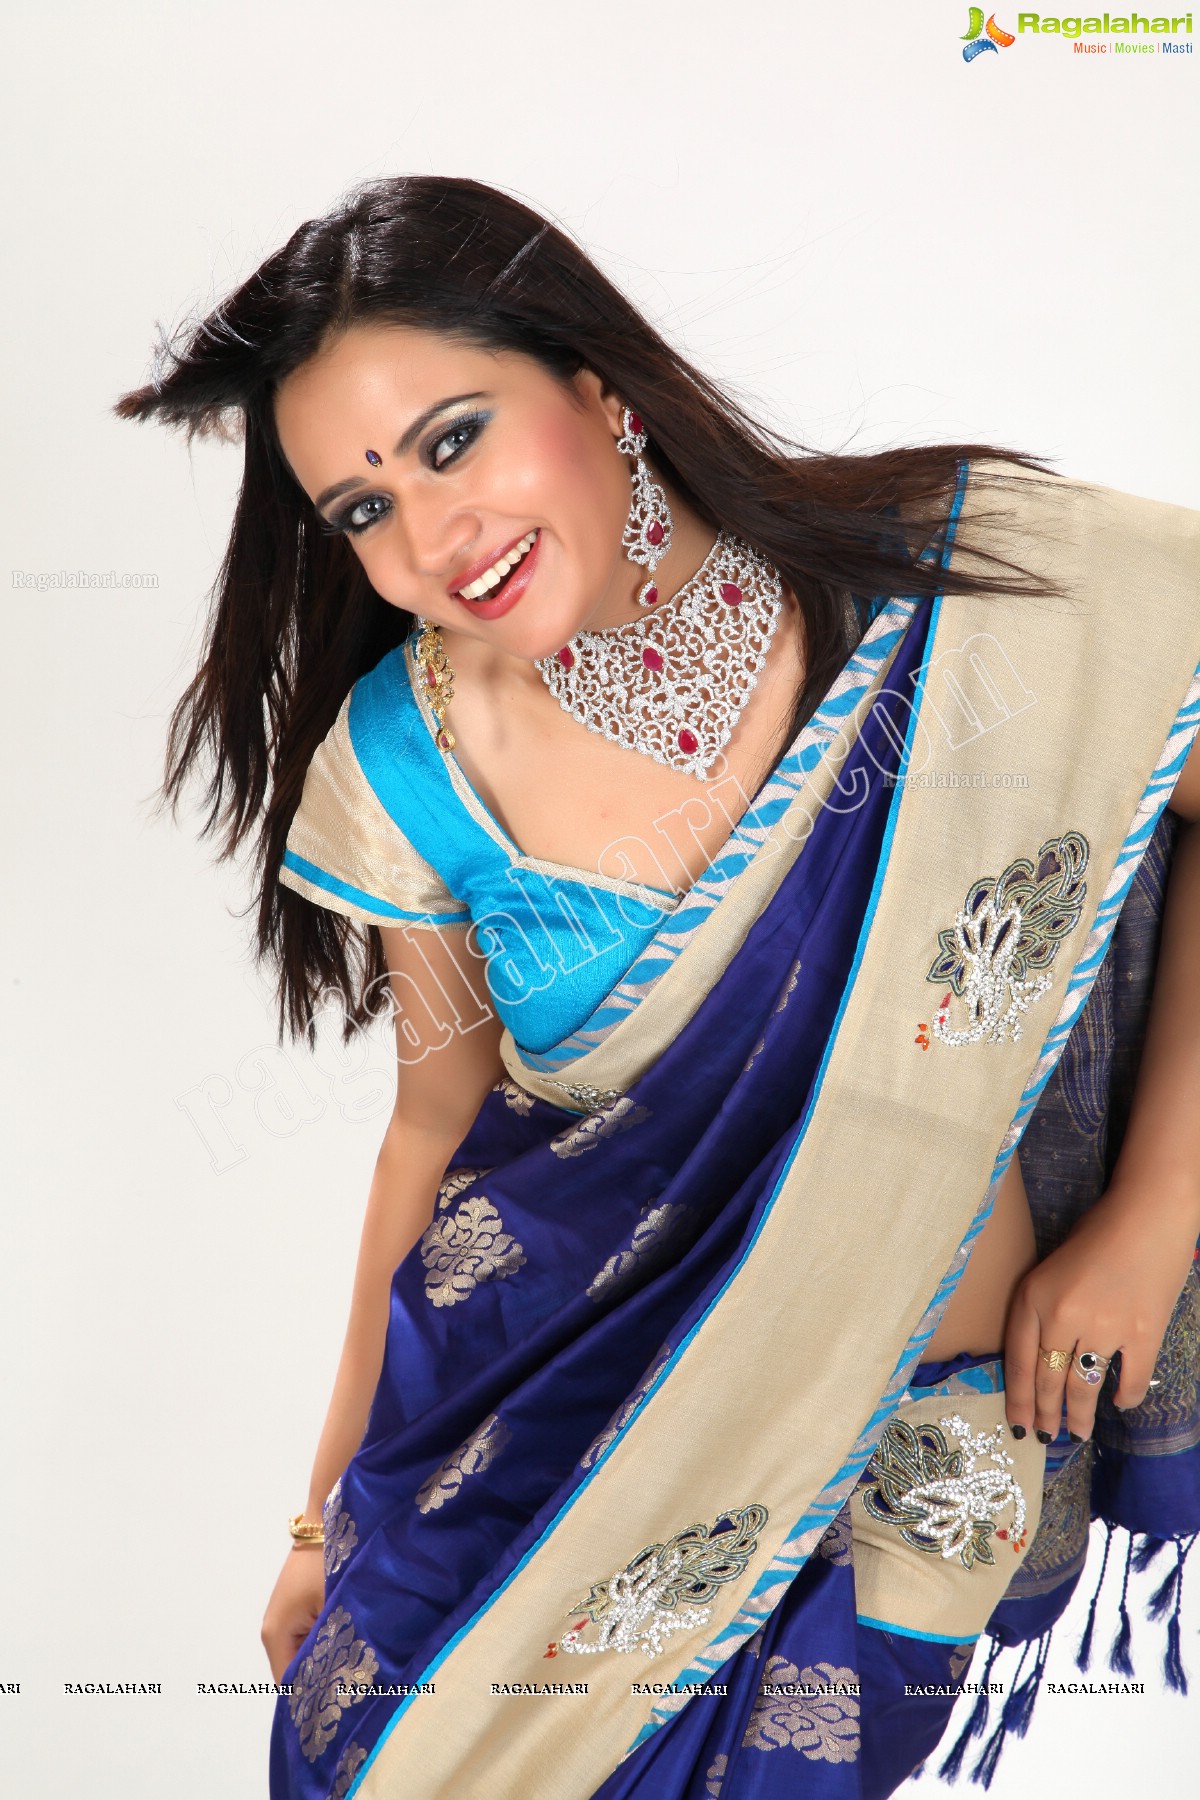 Sunitha Rana